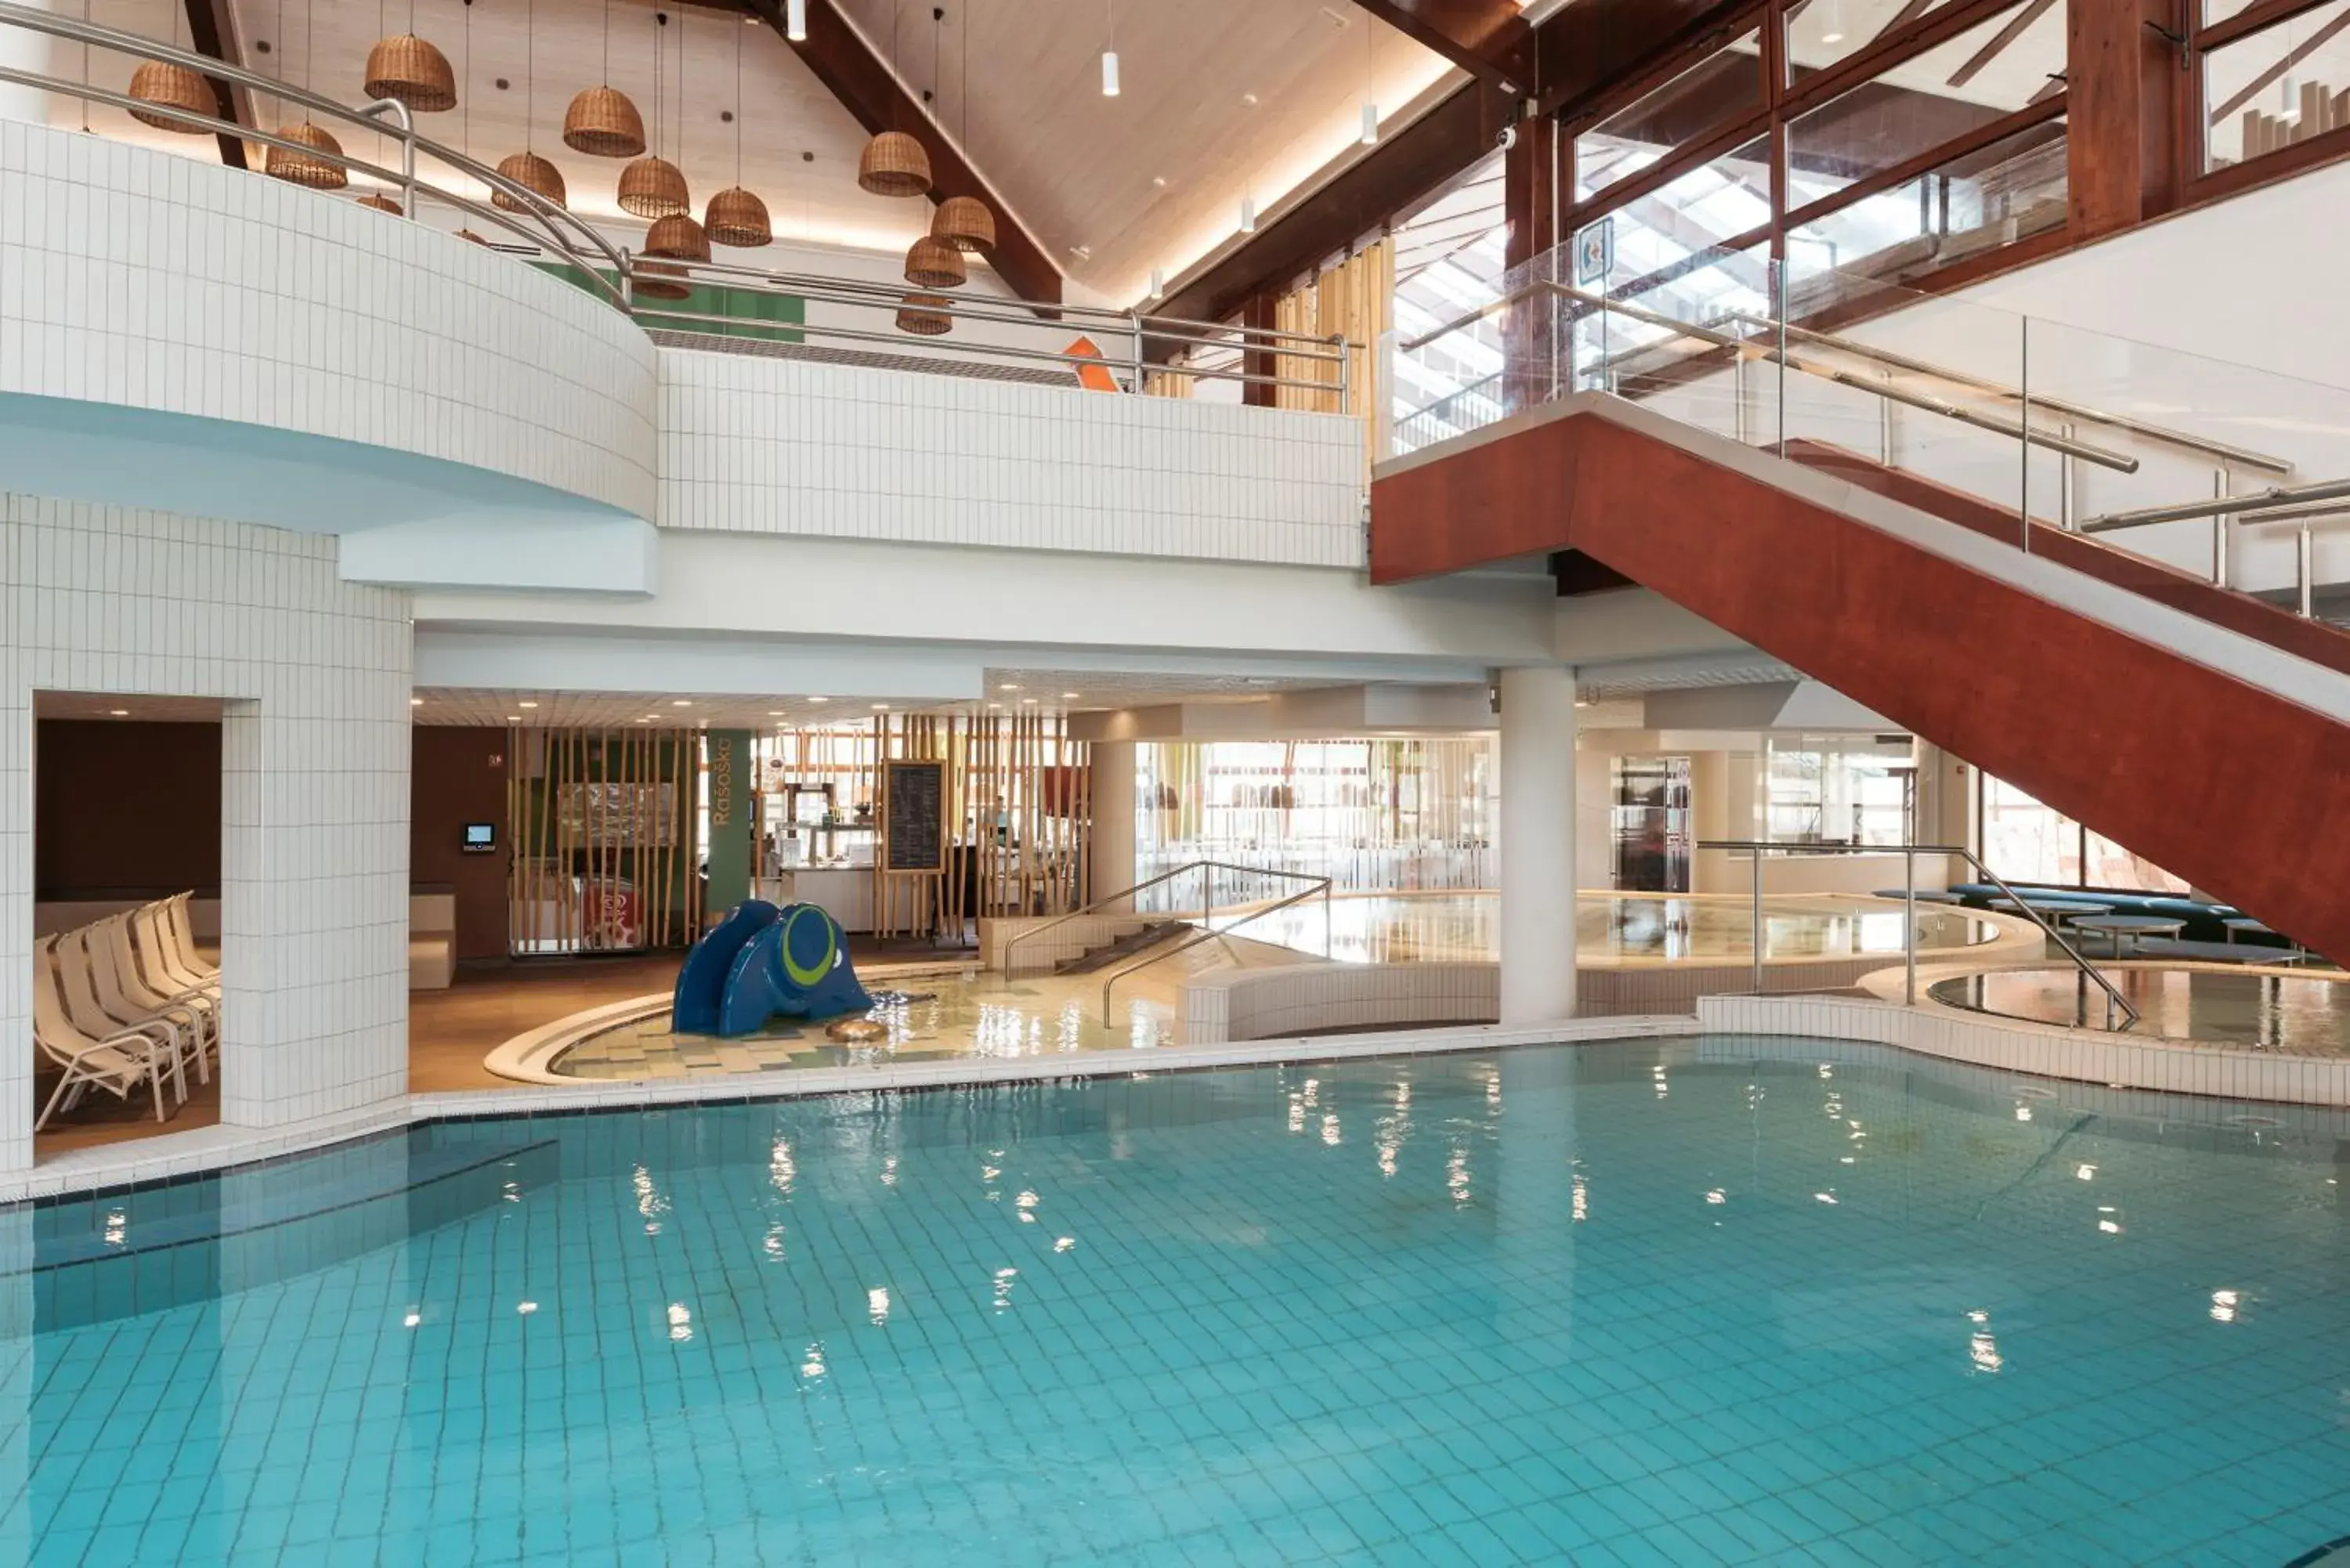 Swimming Pool in Hotel Termal - Terme 3000 - Sava Hotels & Resorts